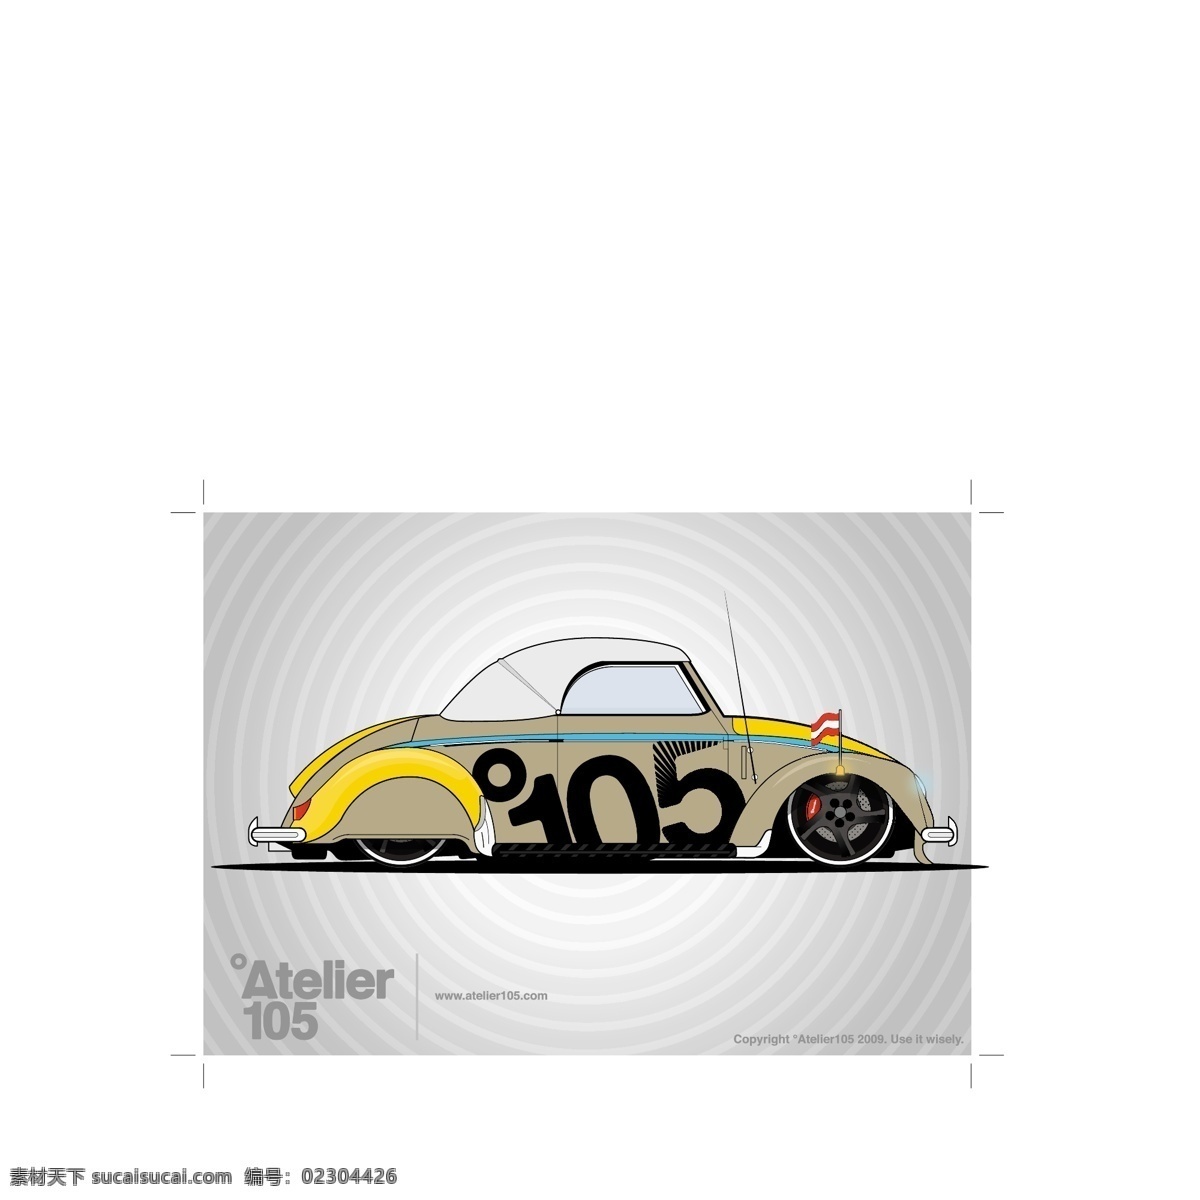 大众 甲壳虫 图形 插画 插图 创意 甲虫 交通运输 经典的 酷 图标 小型车 车艺术 可转换公司 五十年代 有趣的 六十年代 矢量图 其他矢量图